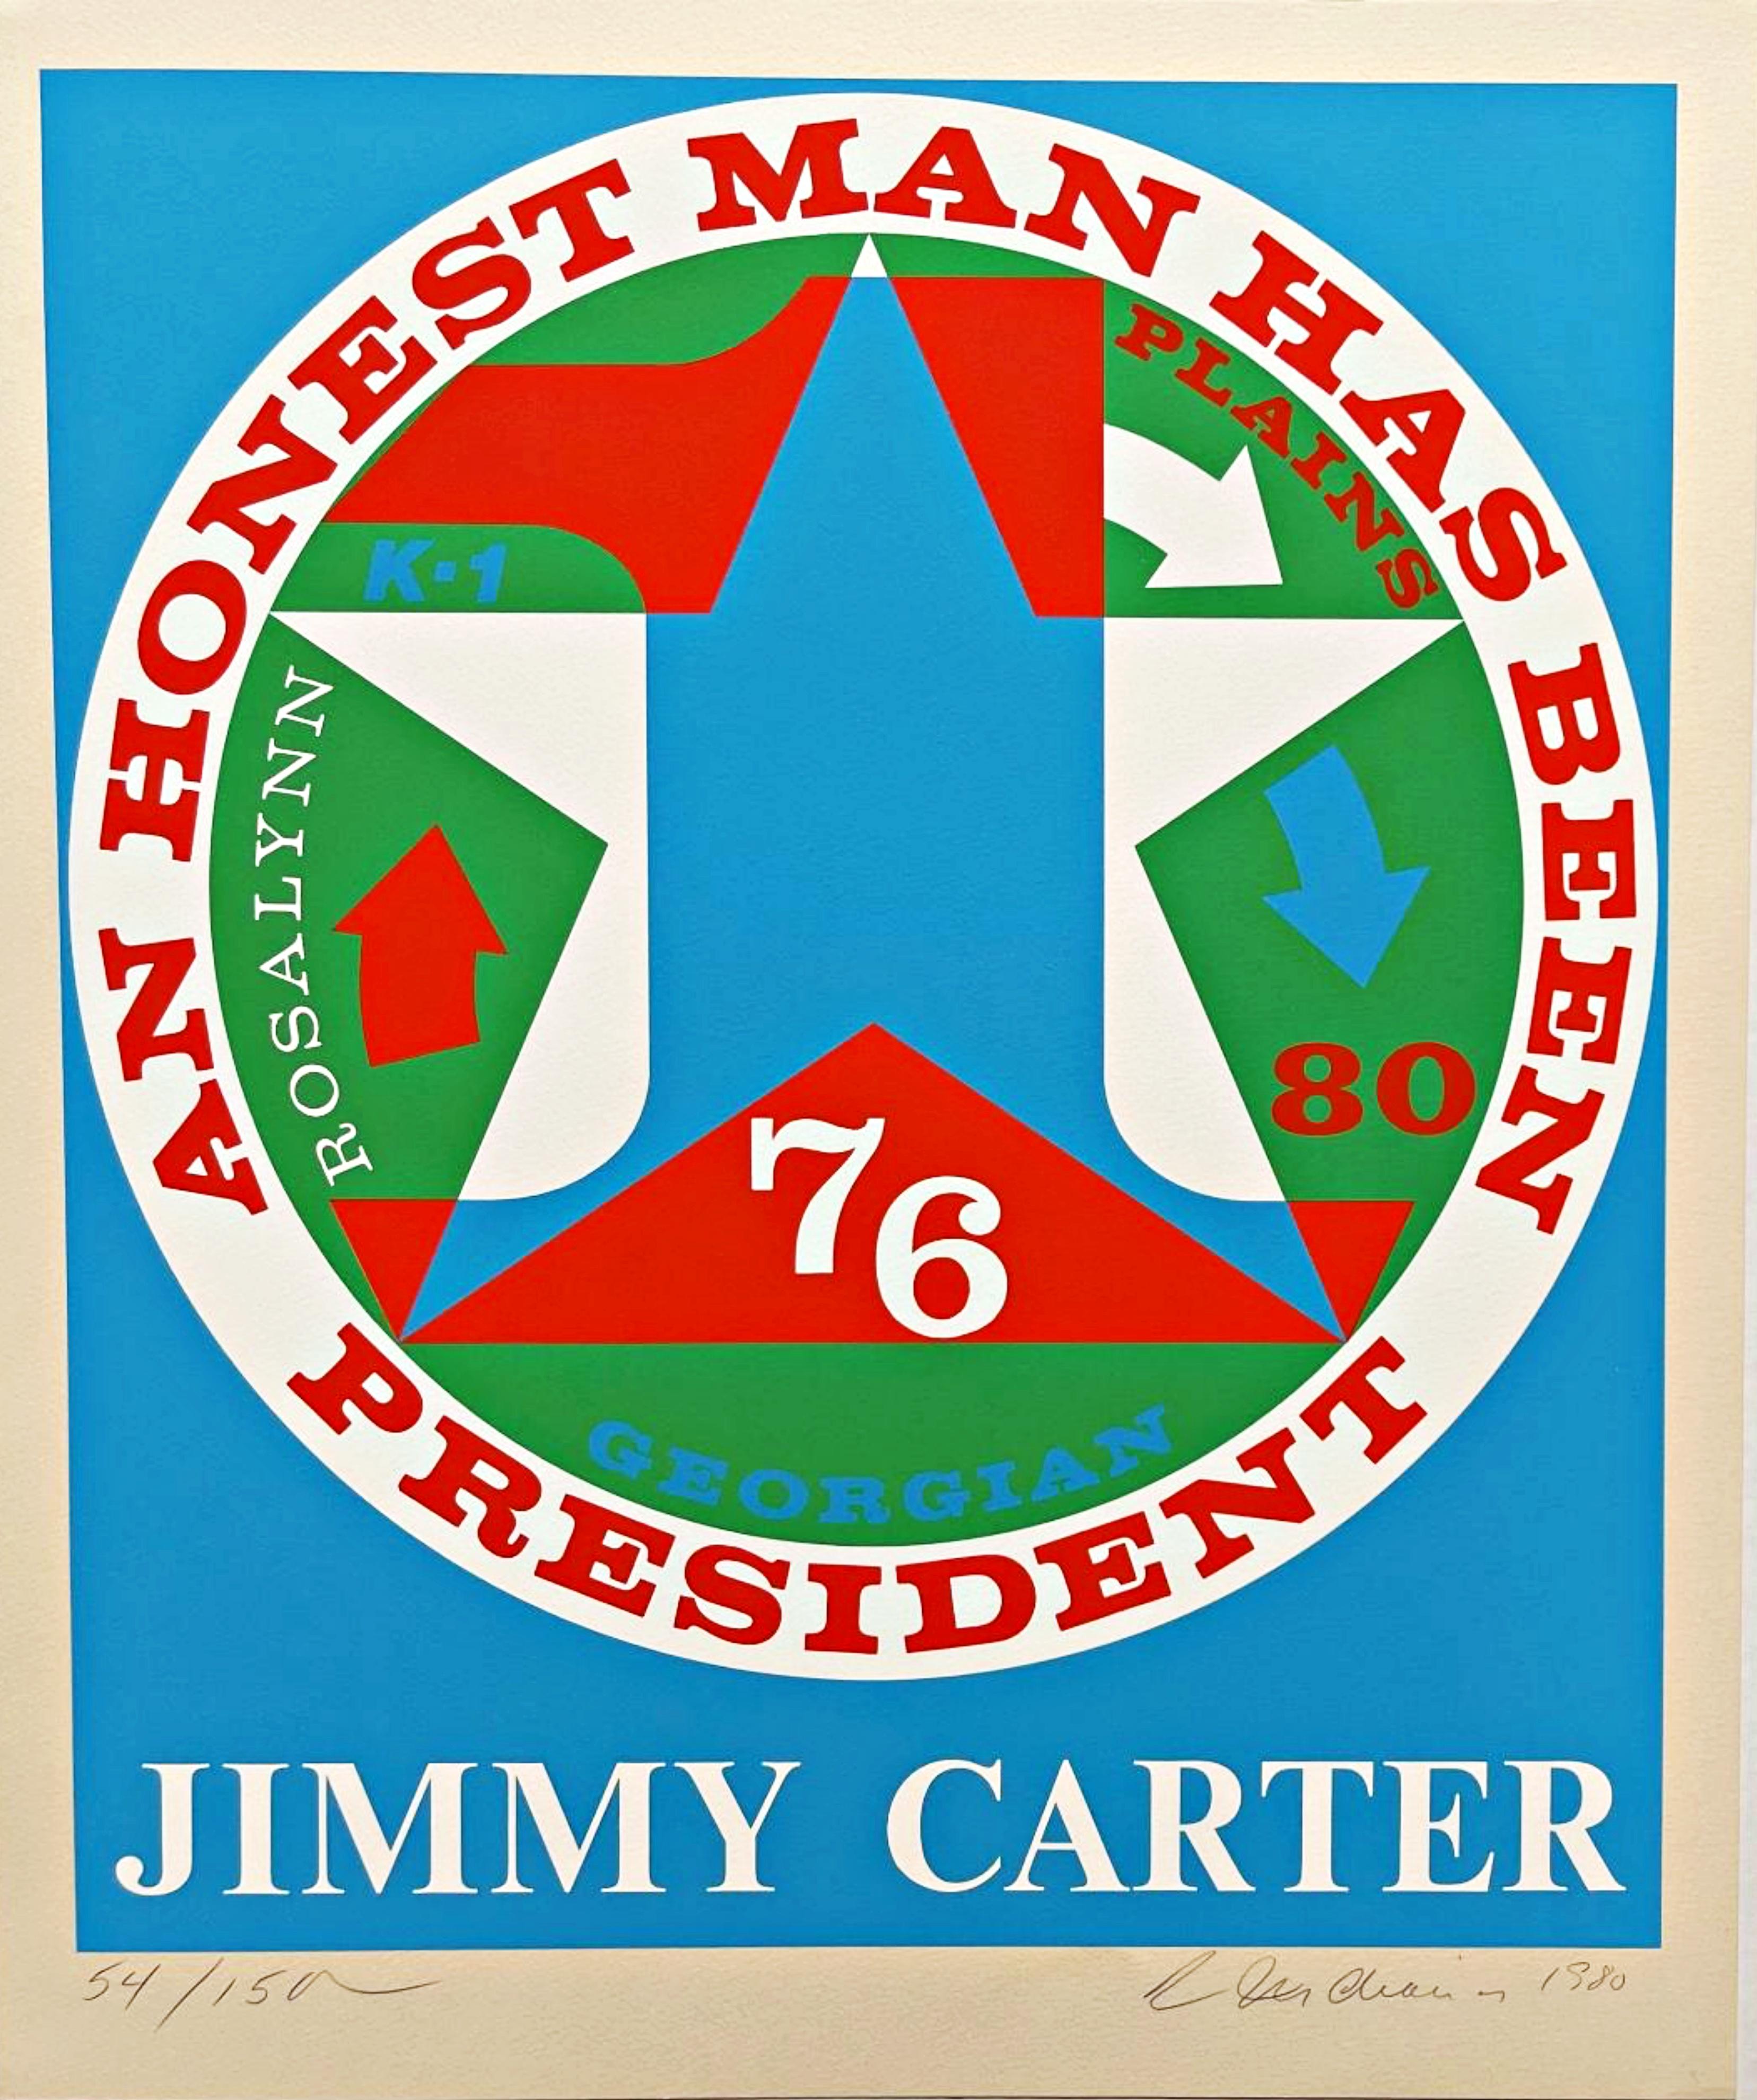 Abstract Print Robert Indiana - Un homme honnête a été président : Hommage à Jimmy Carter (Sheehan, 112)